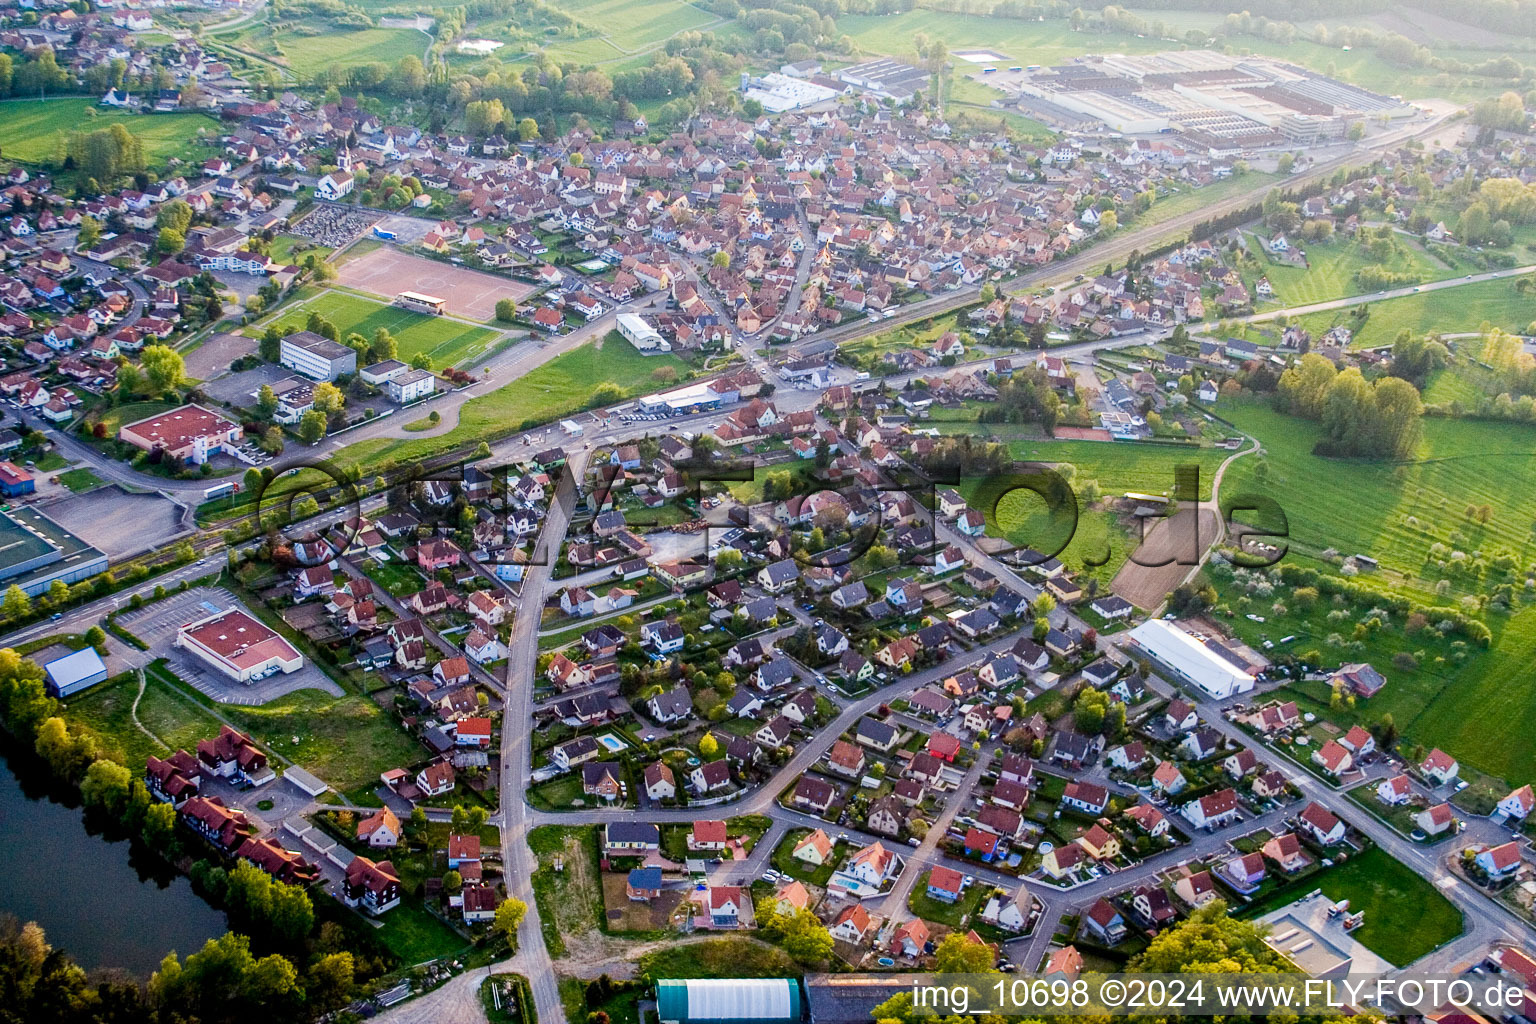 Luftbild von Ortsansicht der Straßen und Häuser der Wohngebiete in Mertzwiller in Grand Est im Bundesland Bas-Rhin, Frankreich